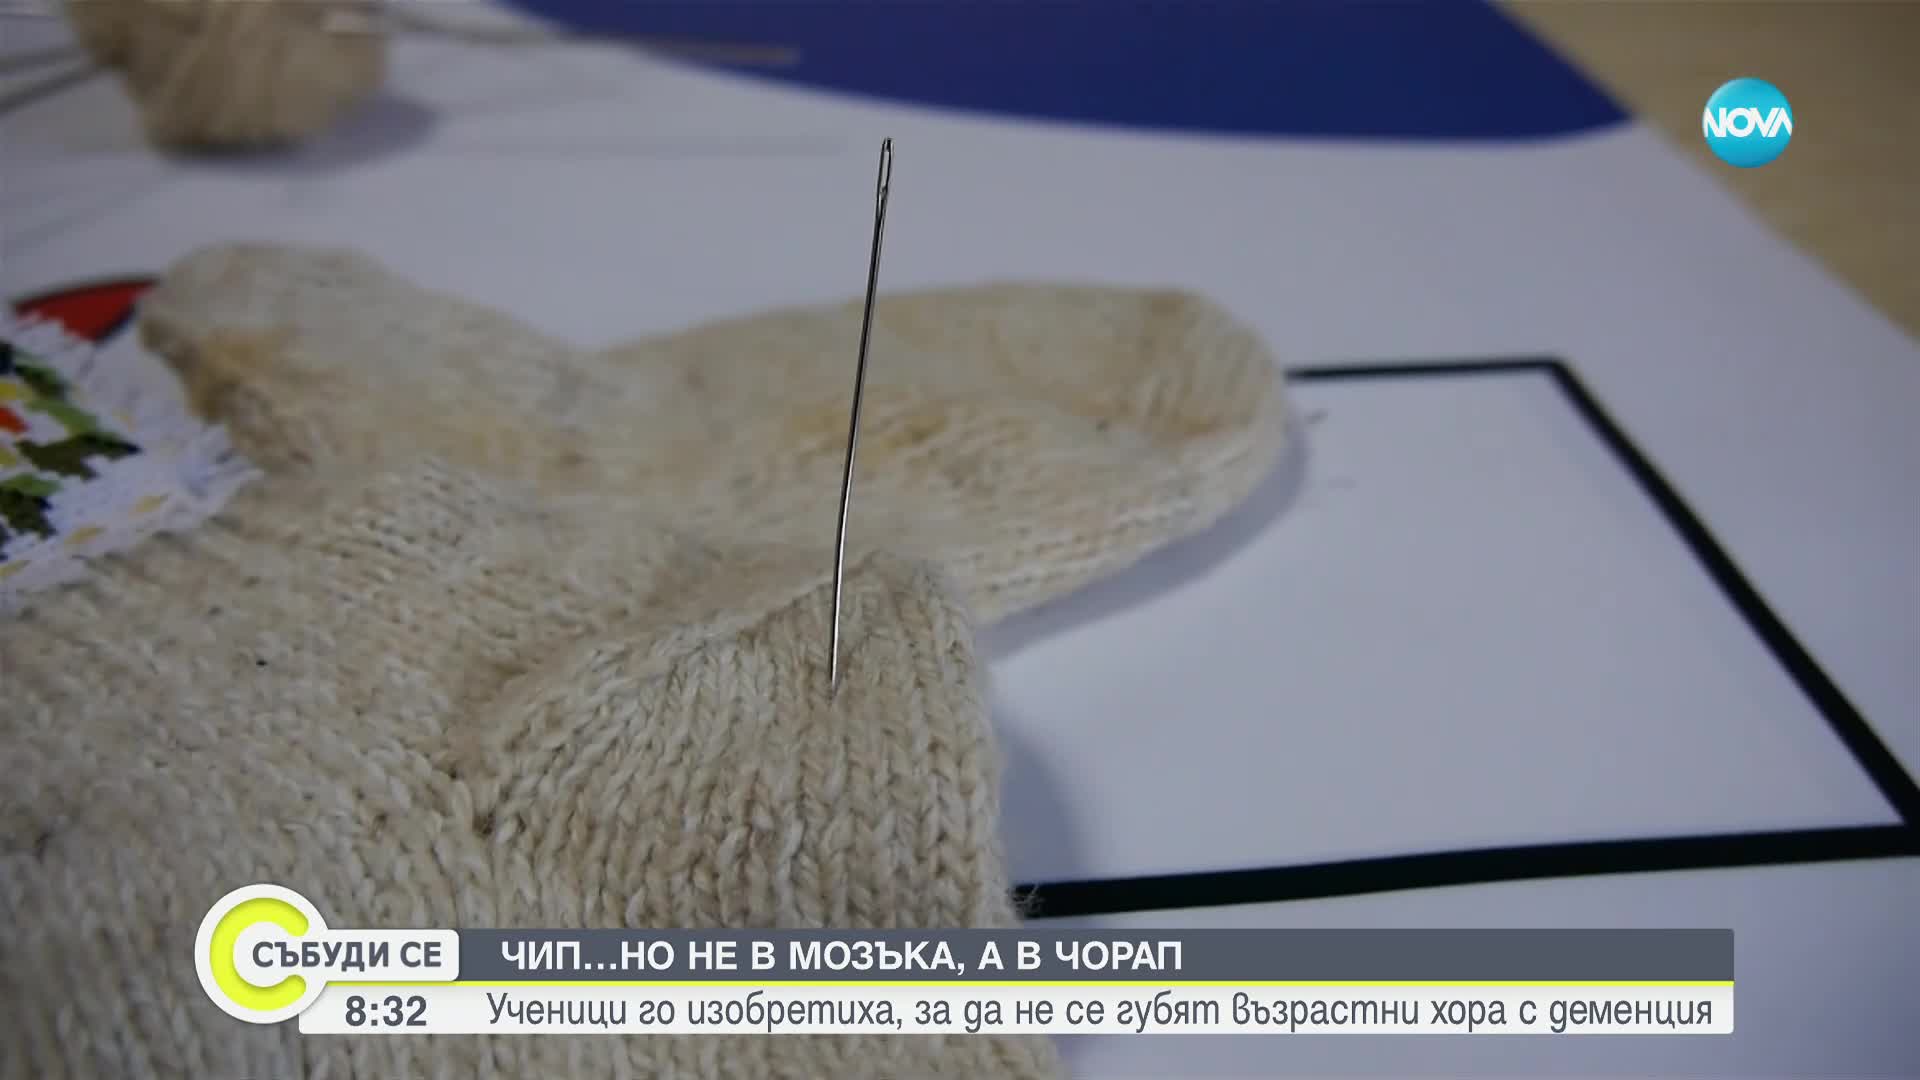 Ученици изобретиха чорап с чип, за да не се губят хора с деменция